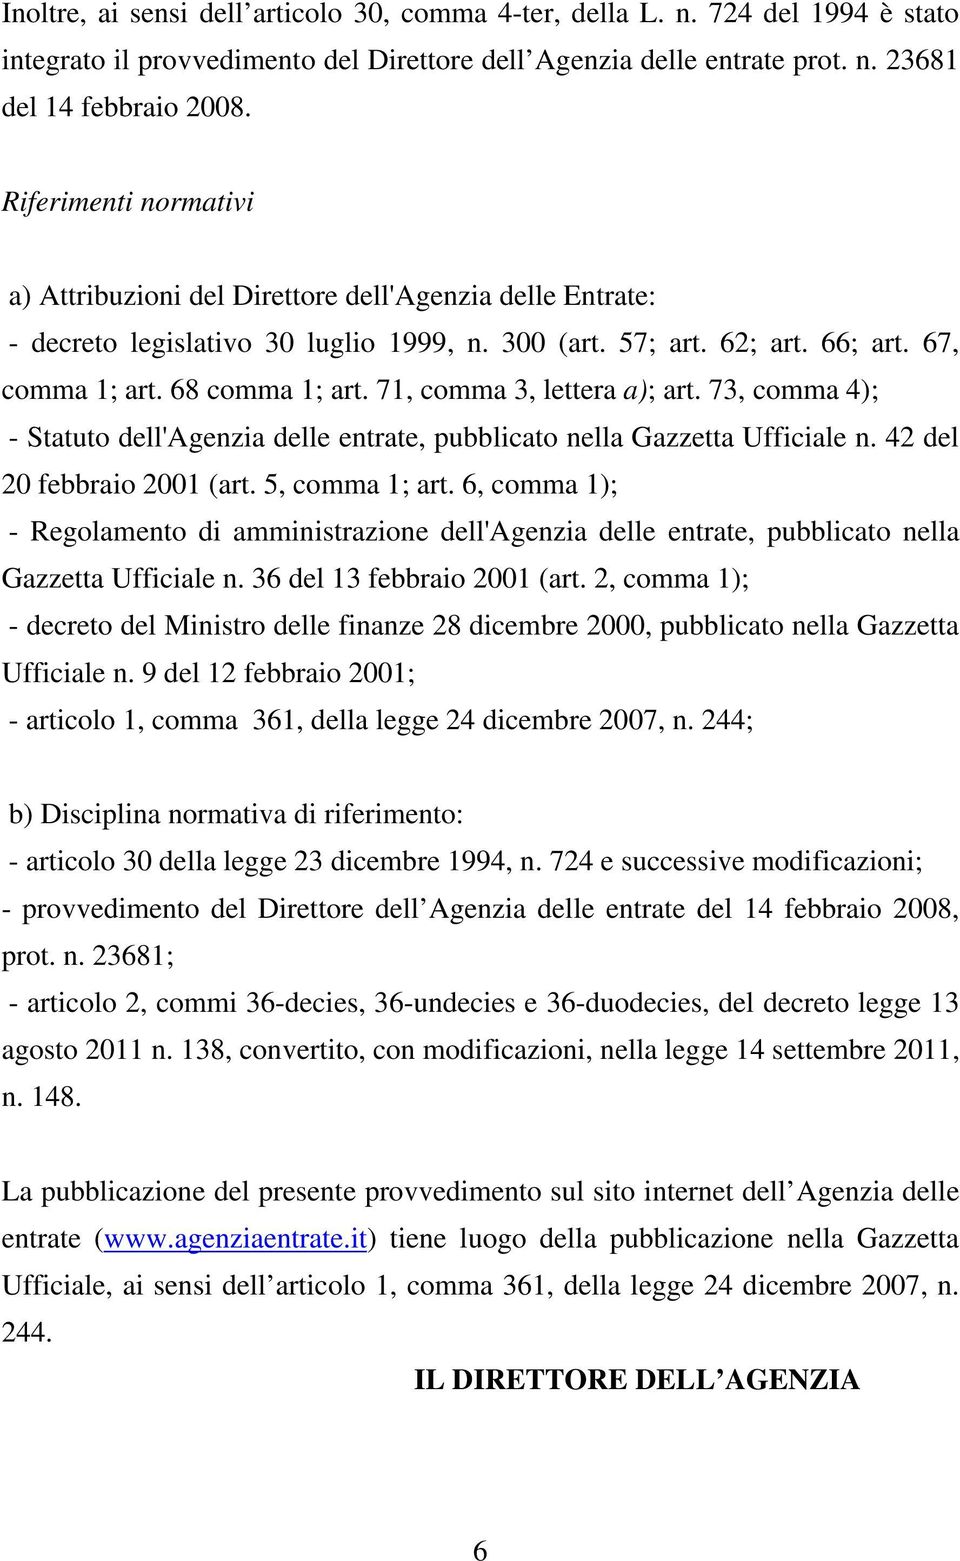 71, comma 3, lettera a); art. 73, comma 4); - Statuto dell'agenzia delle entrate, pubblicato nella Gazzetta Ufficiale n. 42 del 20 febbraio 2001 (art. 5, comma 1; art.